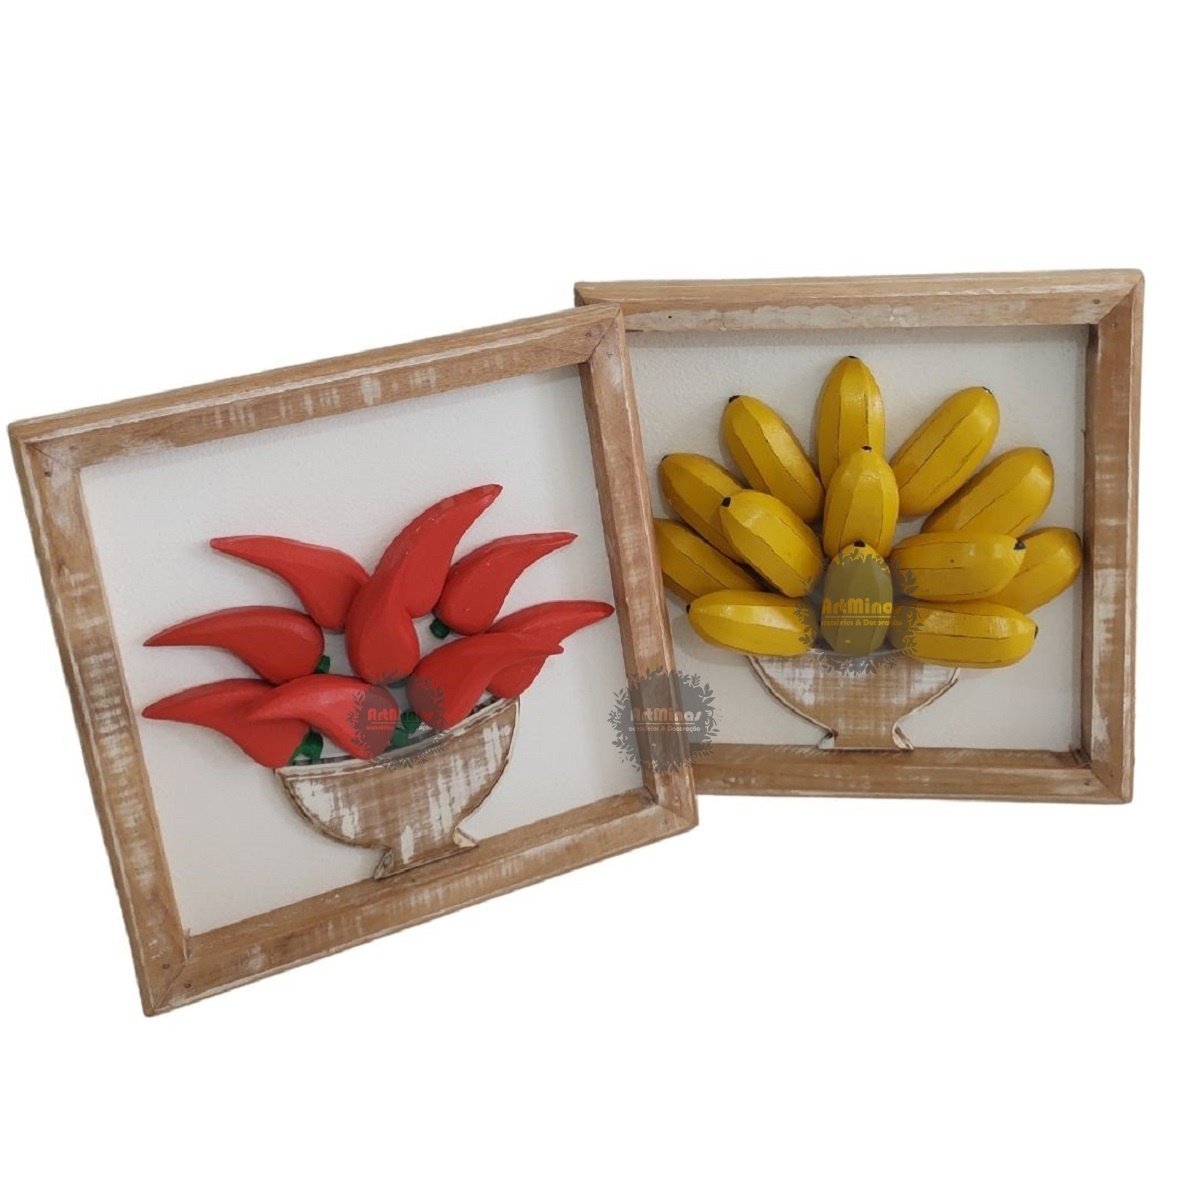 Kit quadros rústicos decorativo em madeira banana/pimenta artesanal